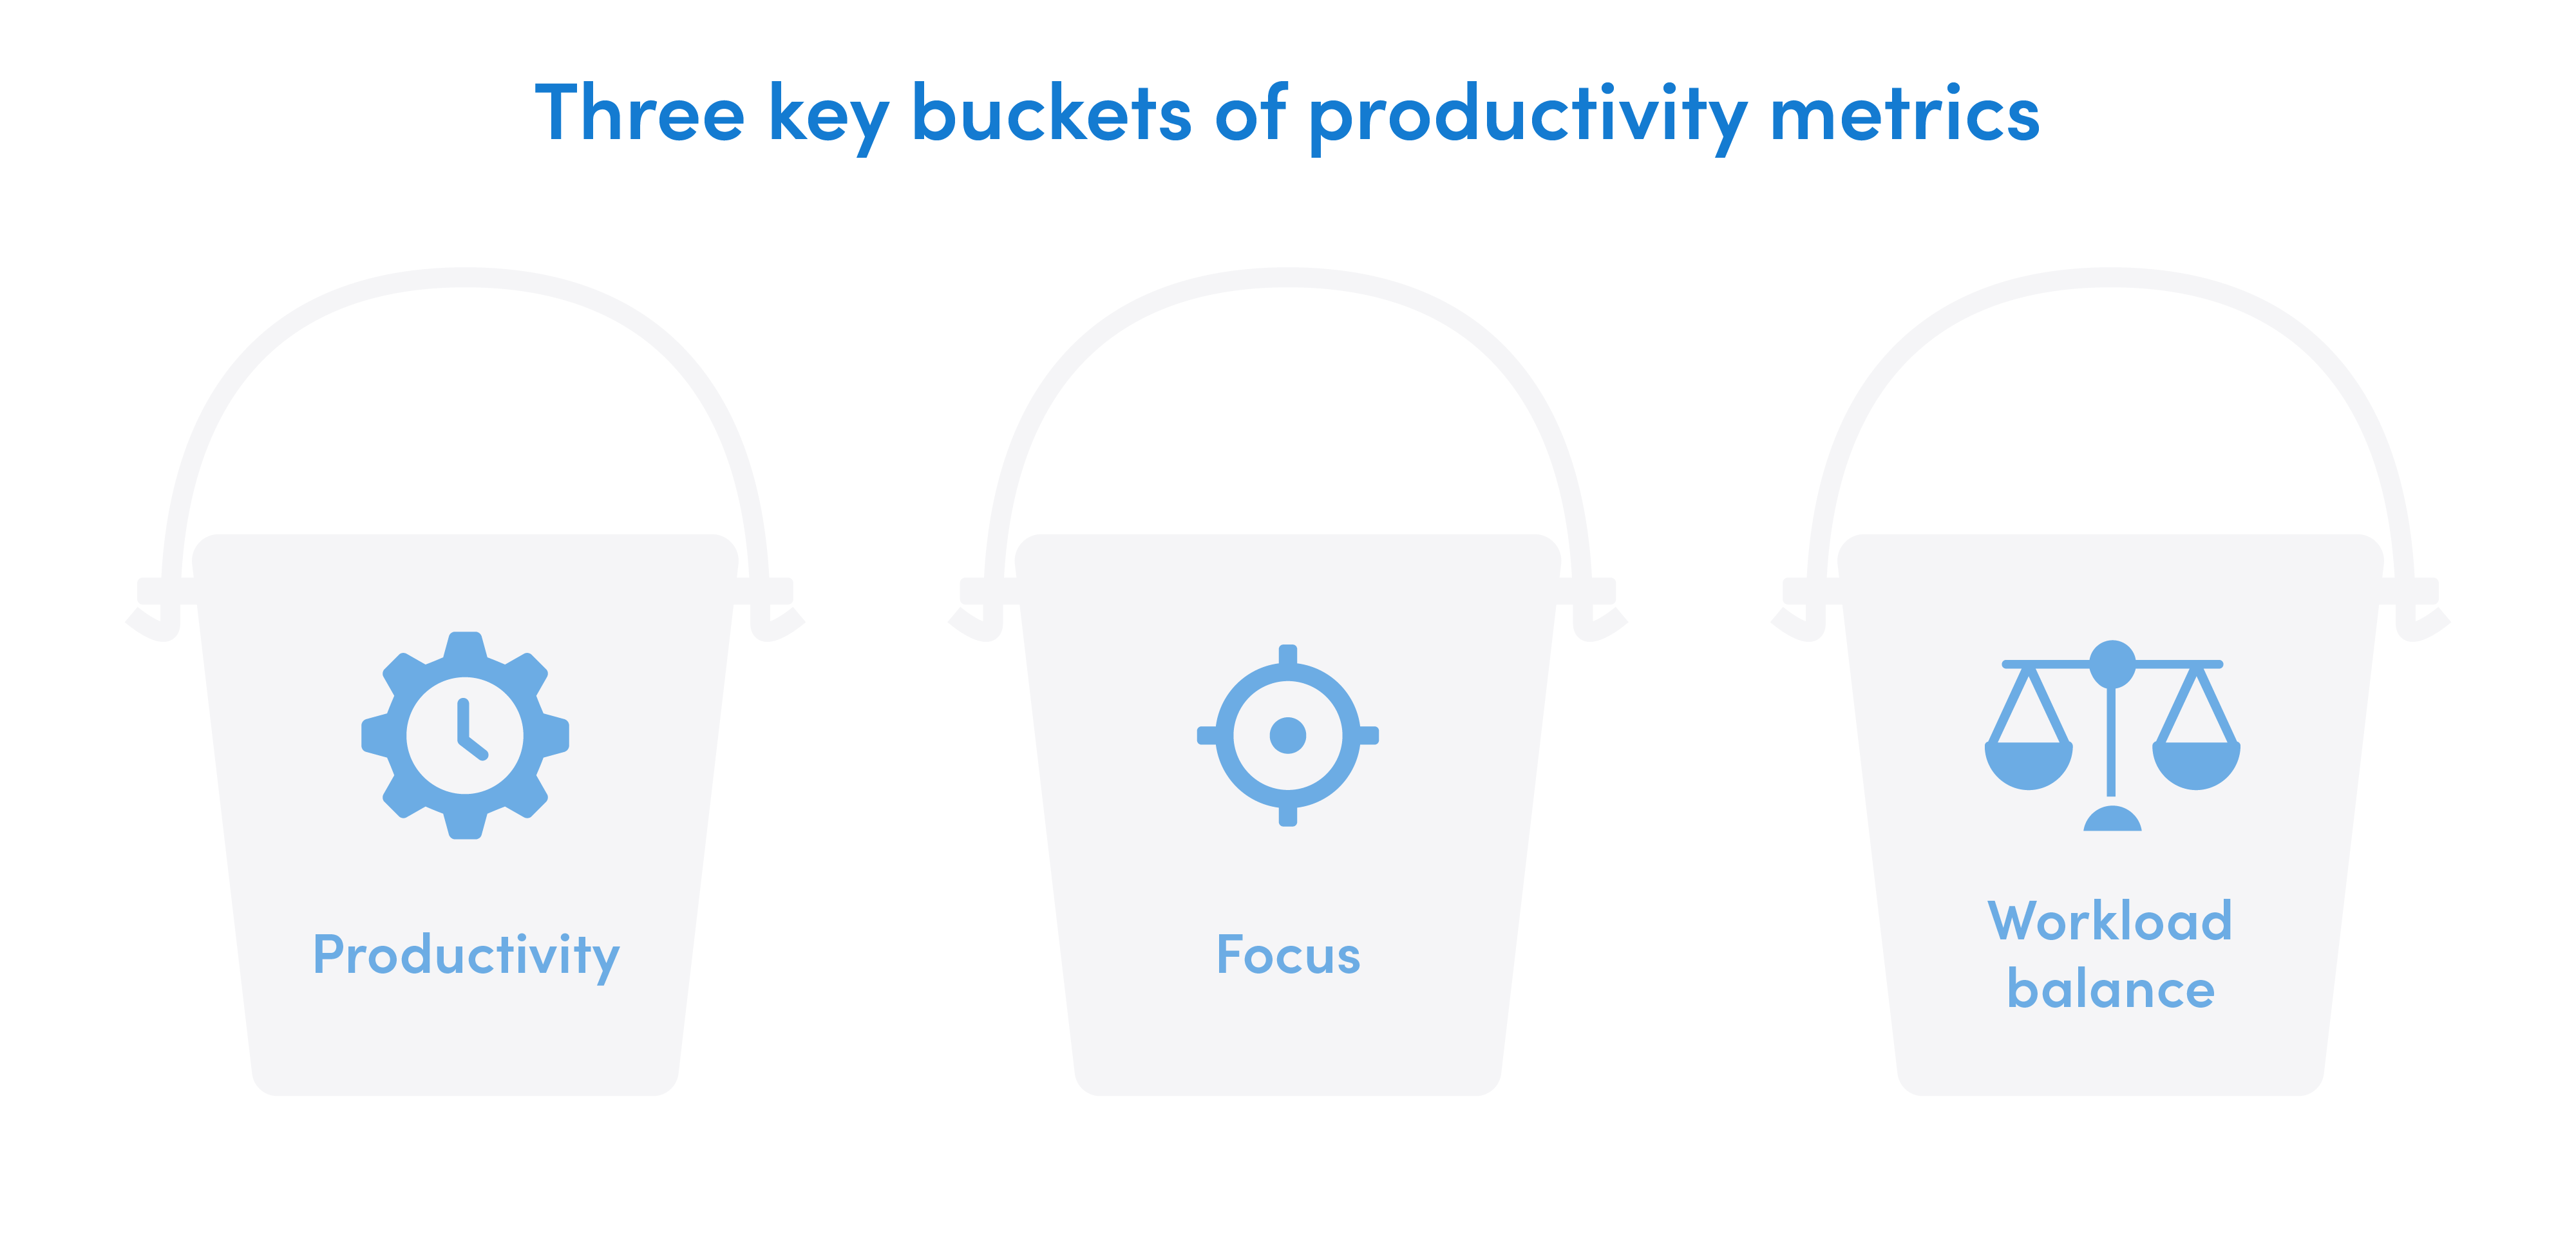 The three key buckets of productivity metrics